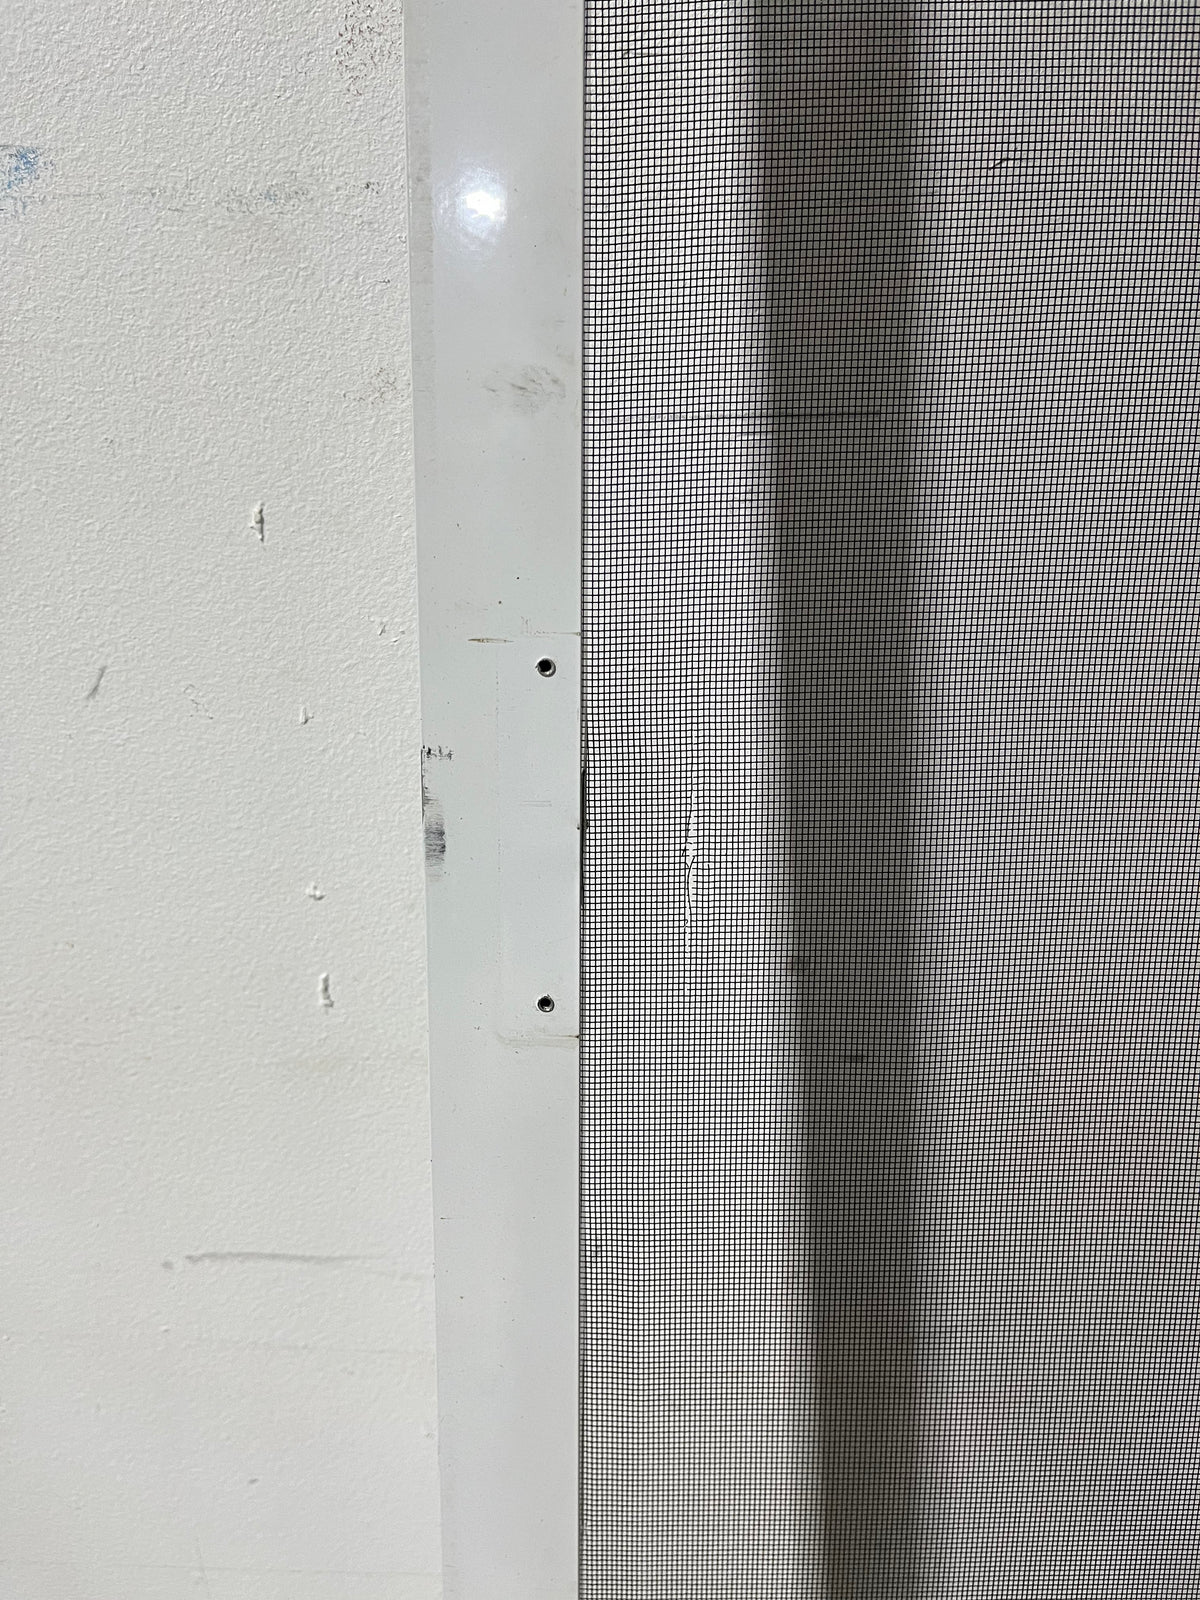 32.5" x 79" Aluminum Screen Door